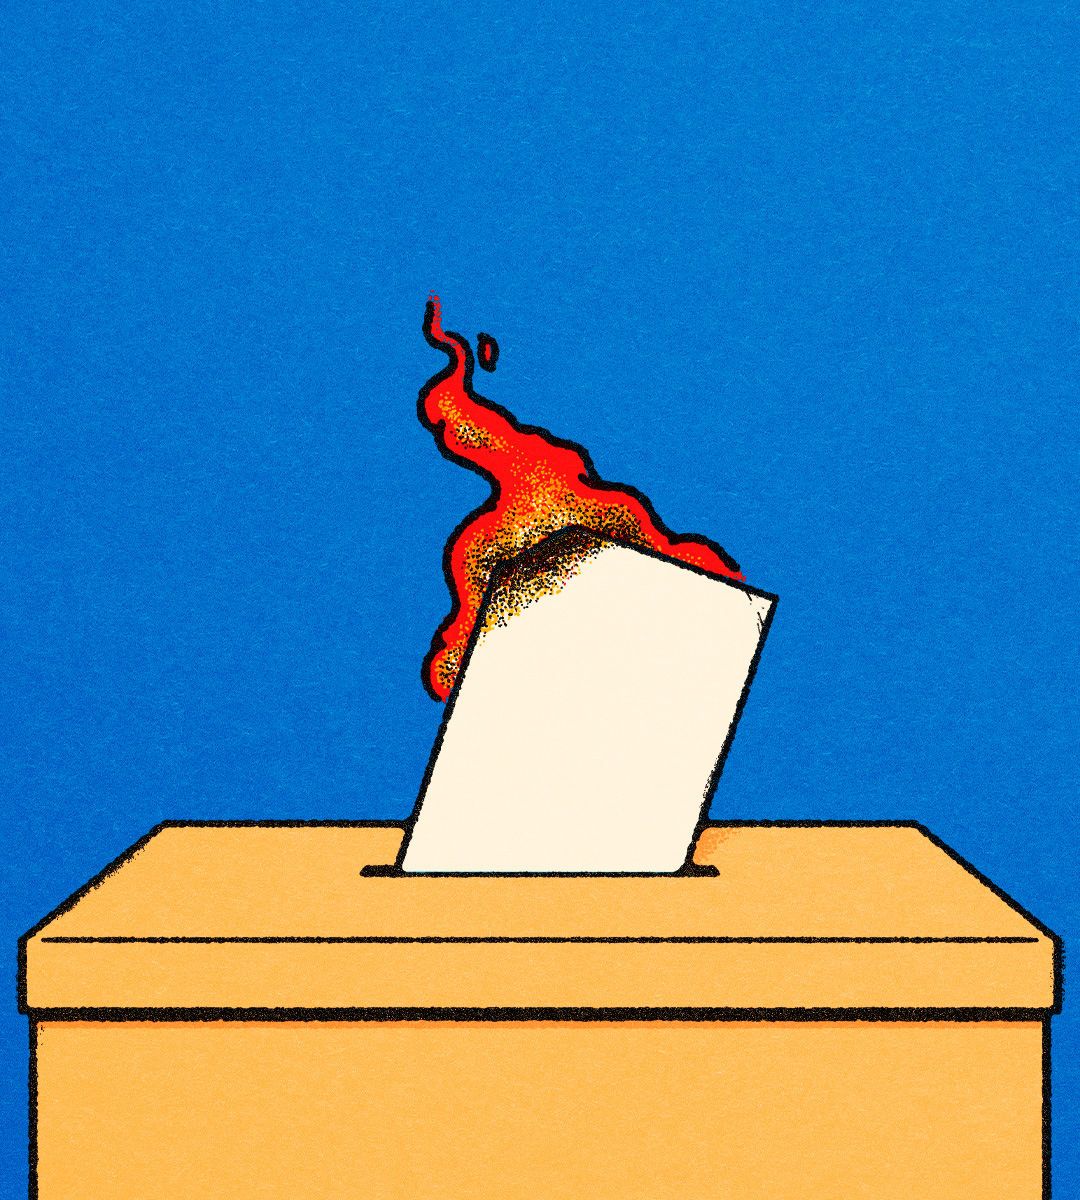 A flaming ballot going into a box